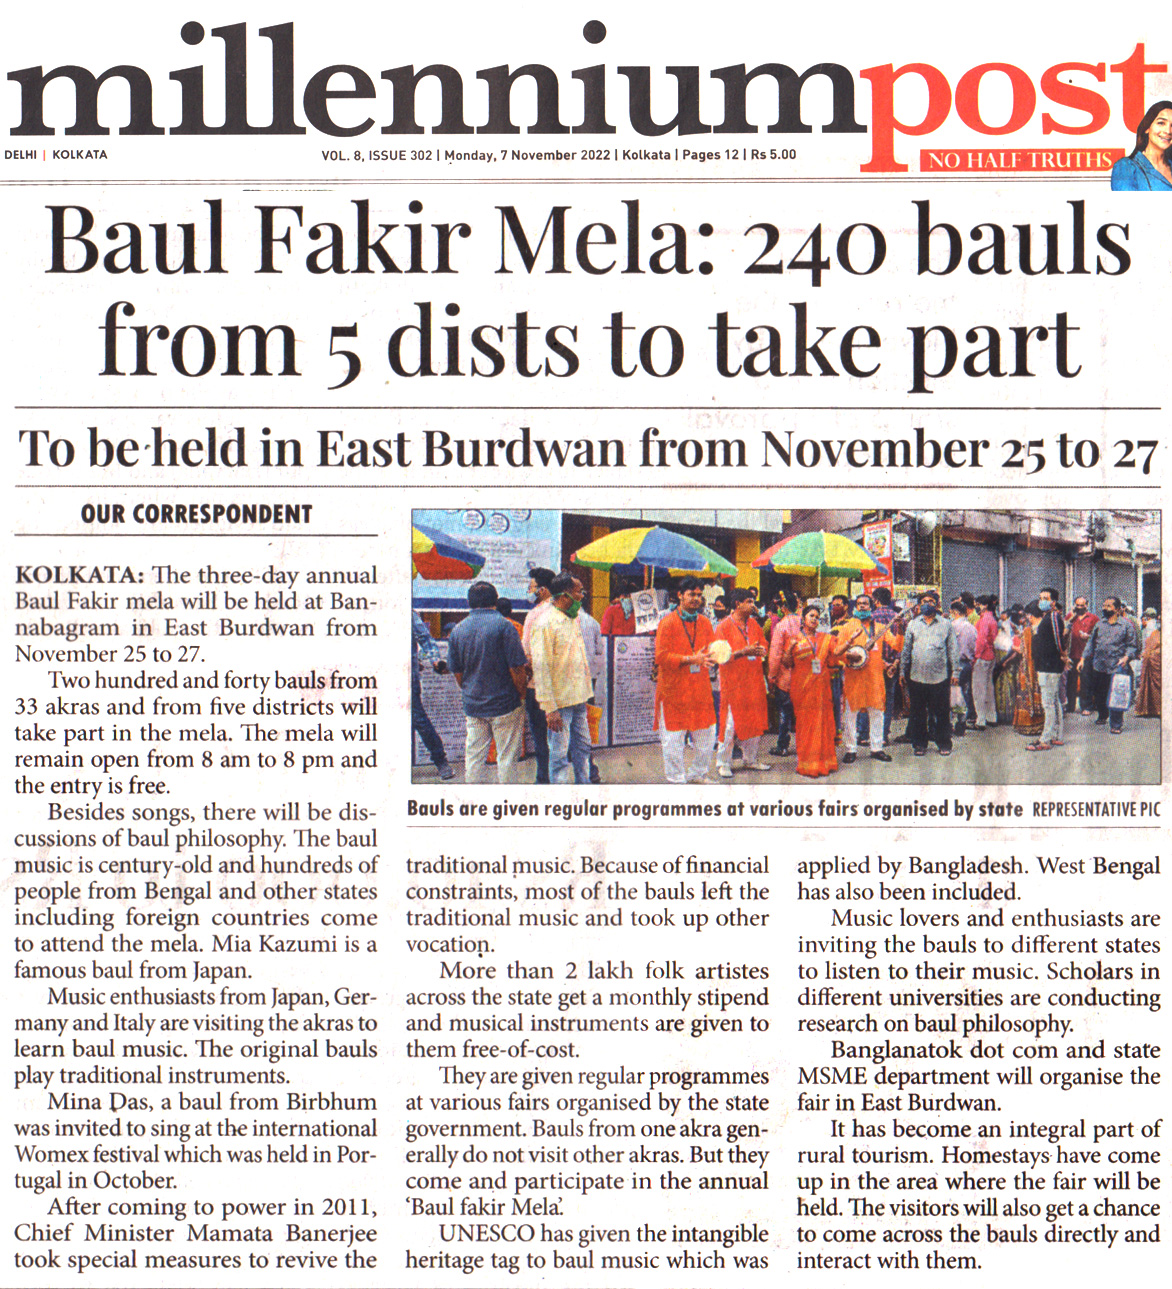 Baul Fakir Mela starts at Ban Nabogram Ashram on 25-27 Nov 2022